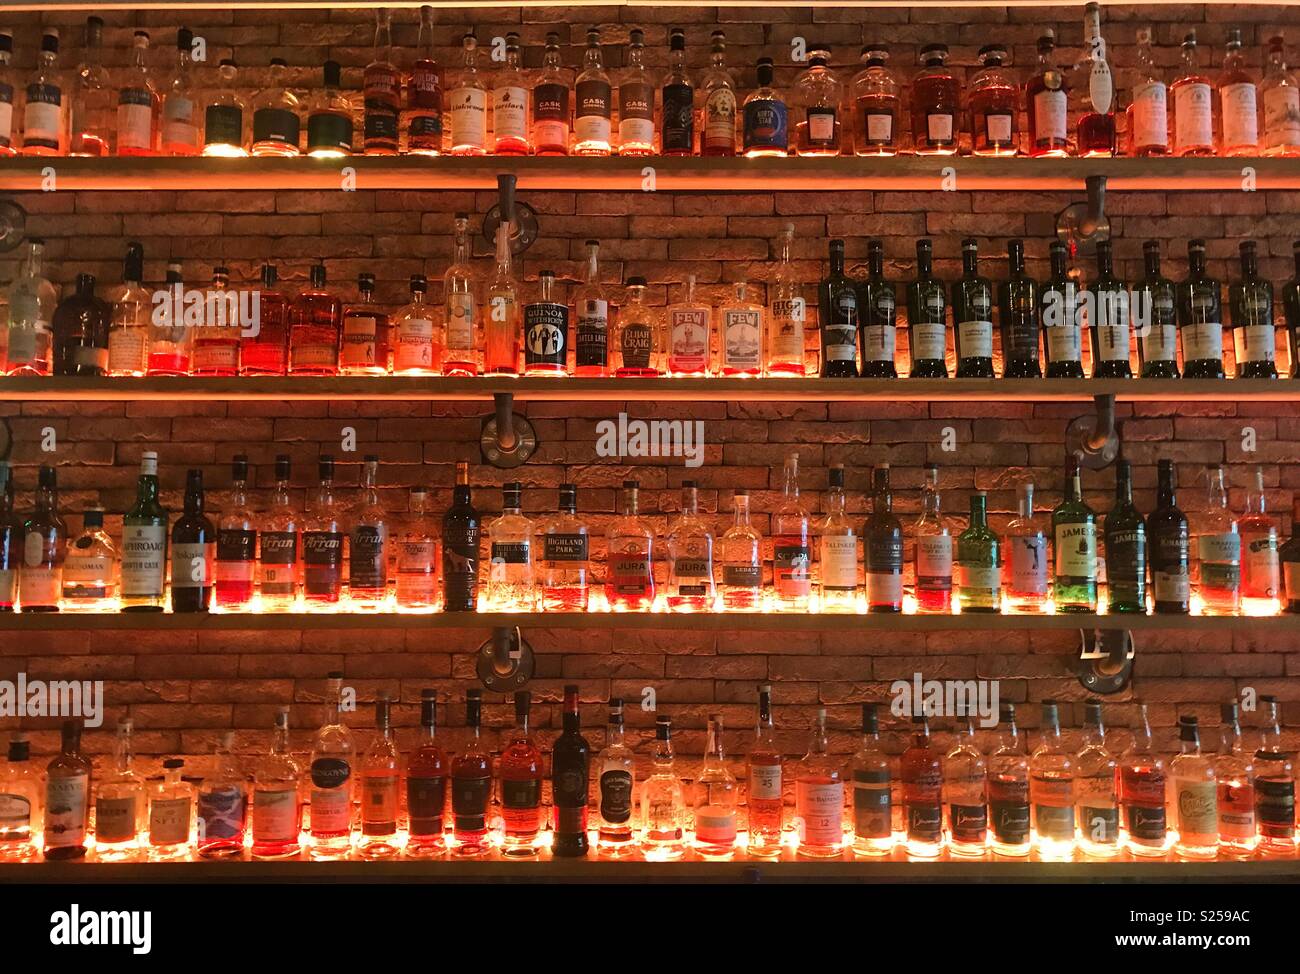 Mur de whiskies au bar à whisky à Amsterdam, aux Pays-Bas. Banque D'Images